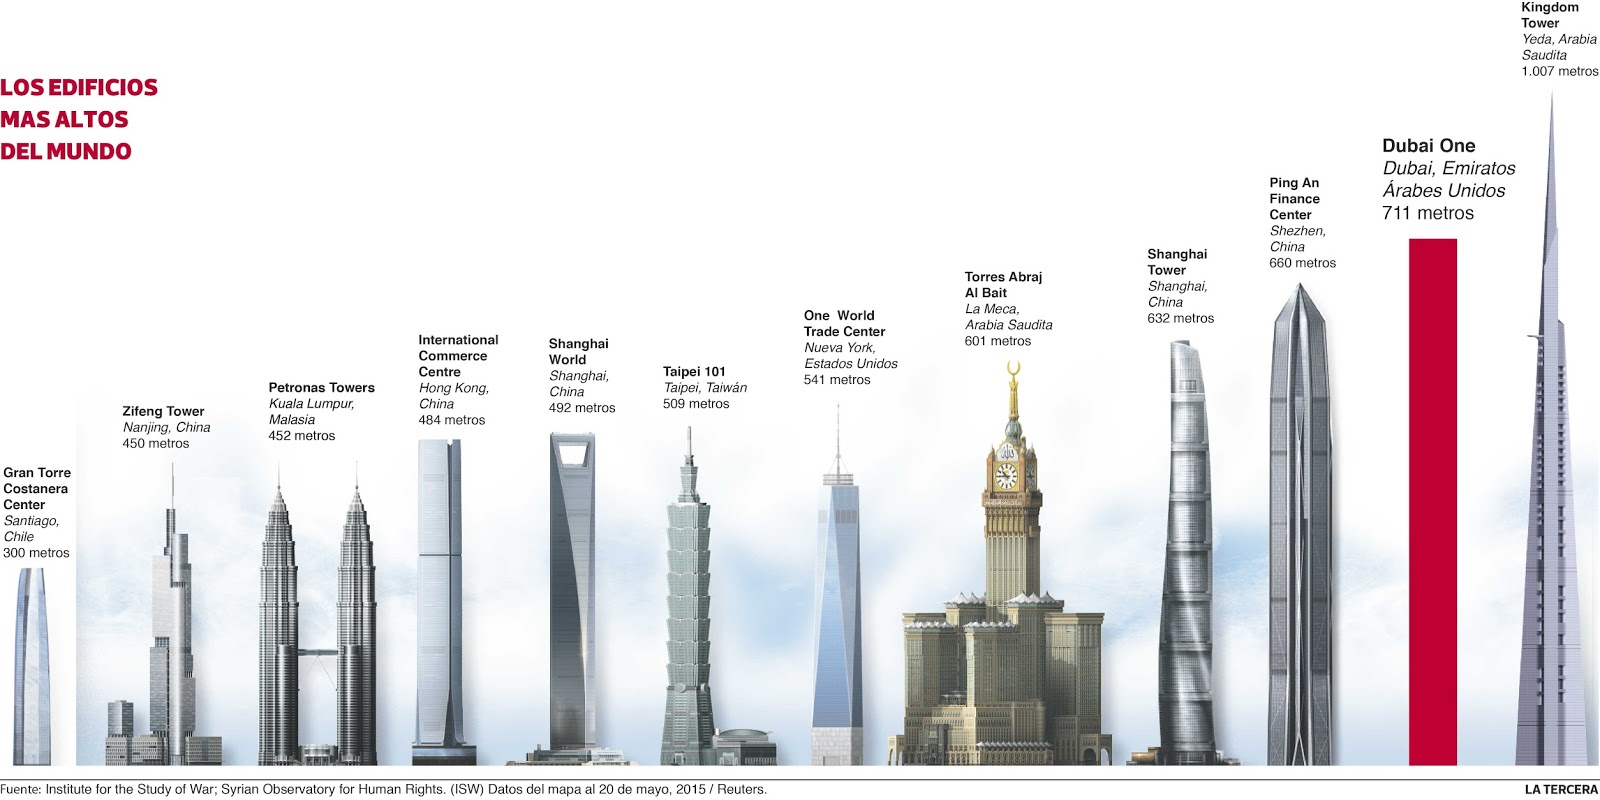 Cual es edificio mas alto del mundo